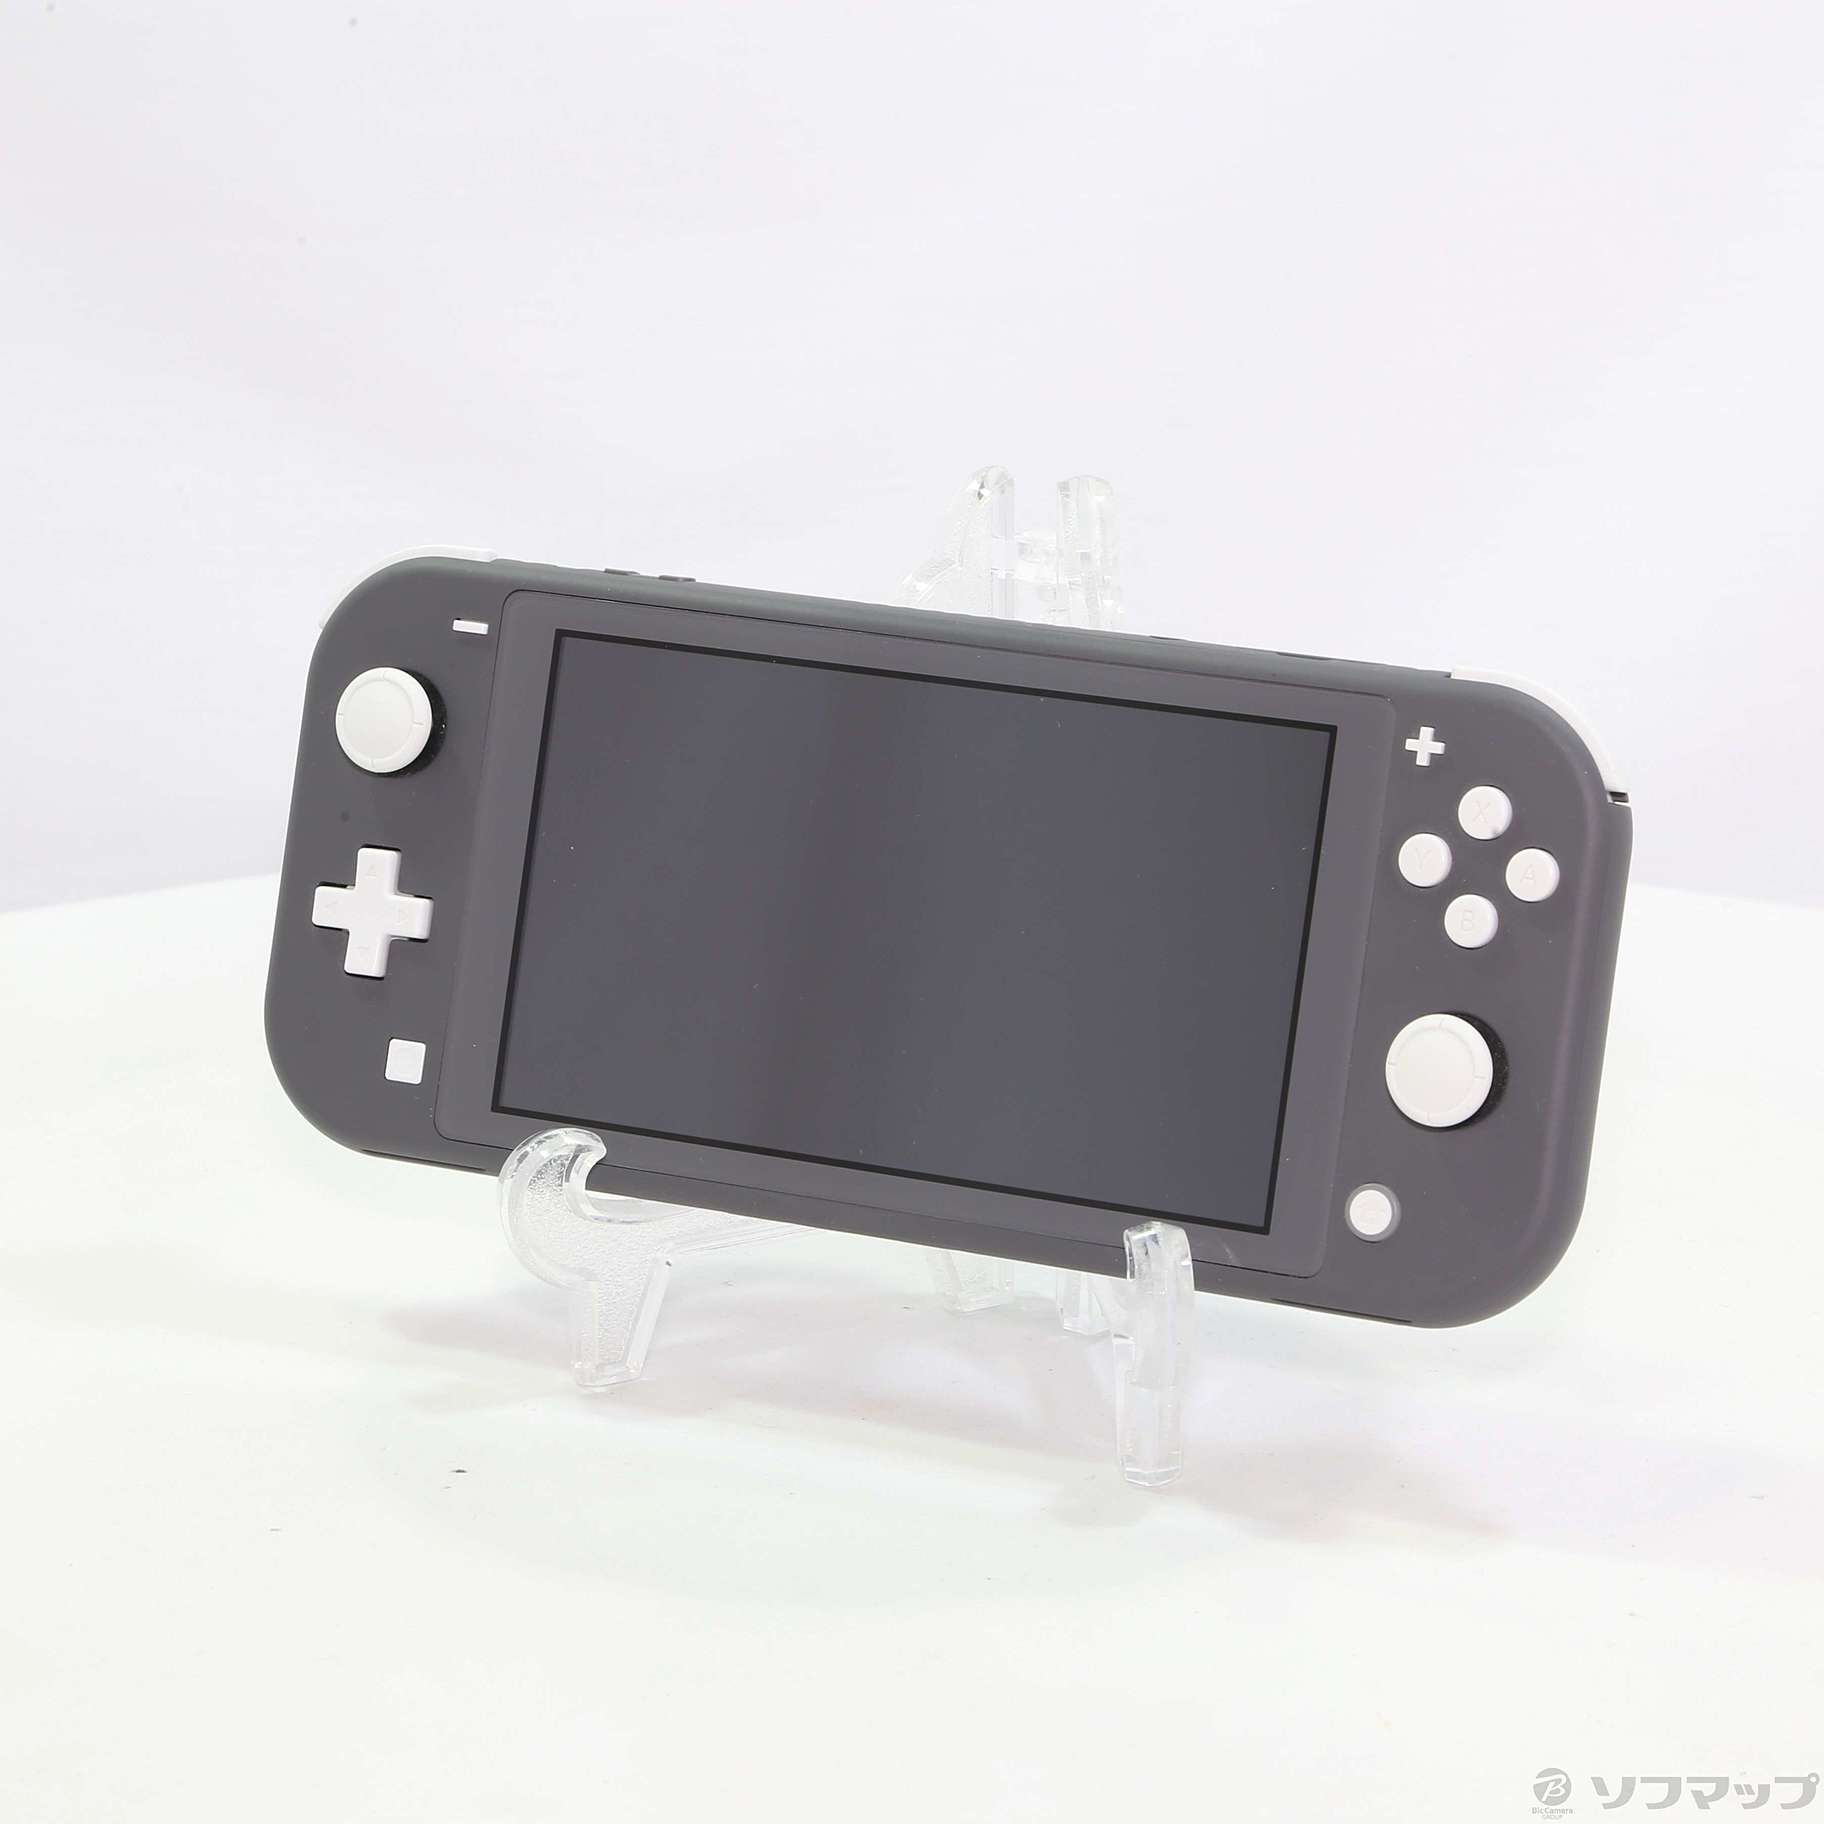 中古】セール対象品 Nintendo Switch Lite グレー ◇07/15(金)値下げ